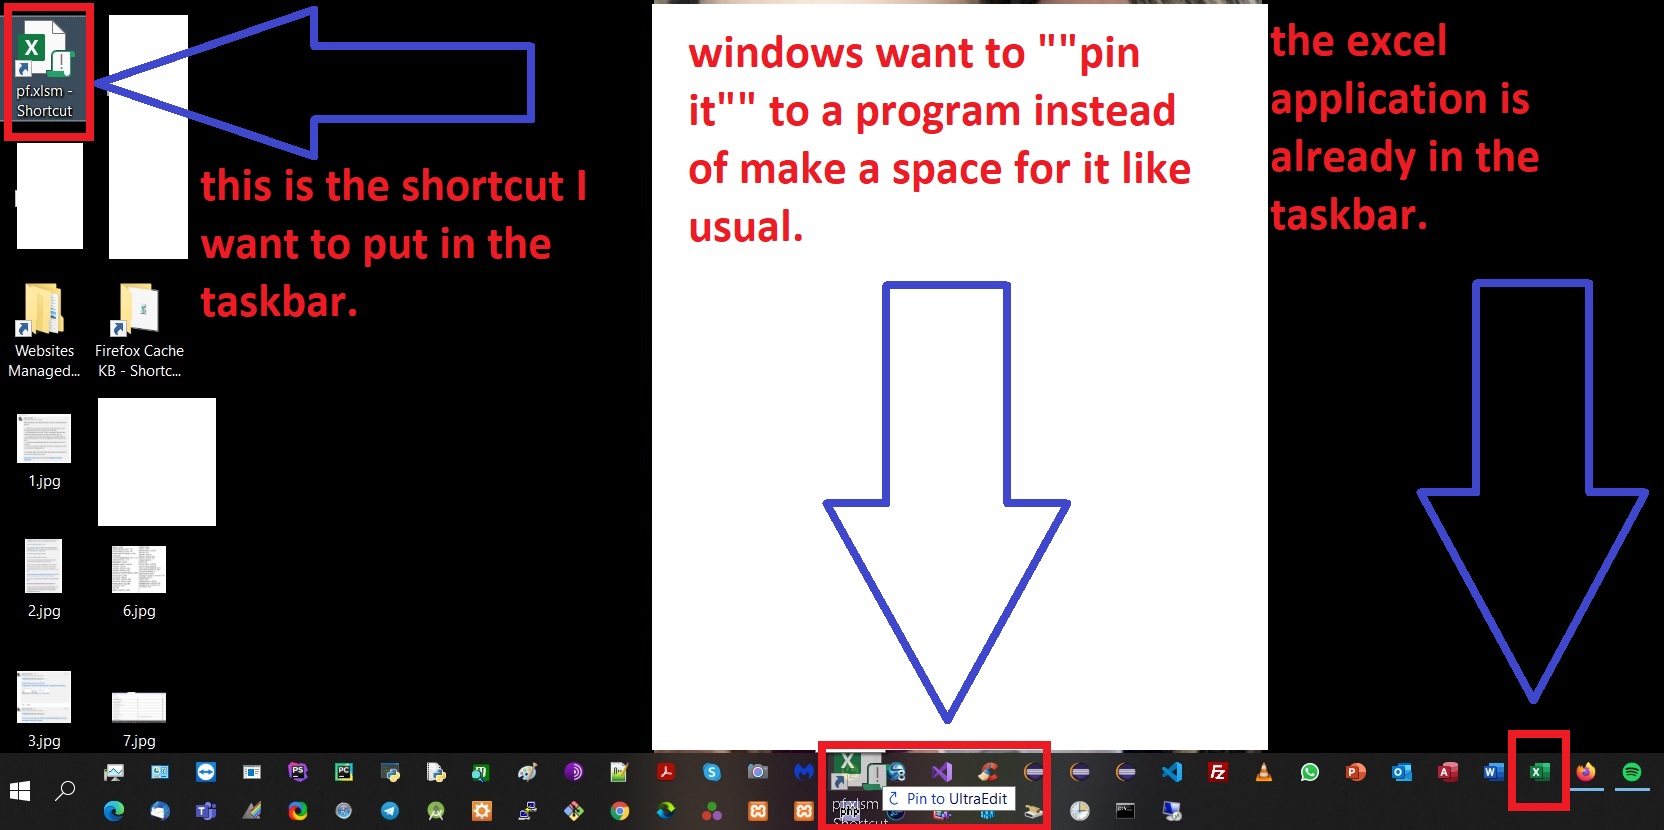 cannot pin shortcuts to taskbar sometimes d3c6d6f4-a80f-499a-a2c5-01445f0a68c1?upload=true.jpg